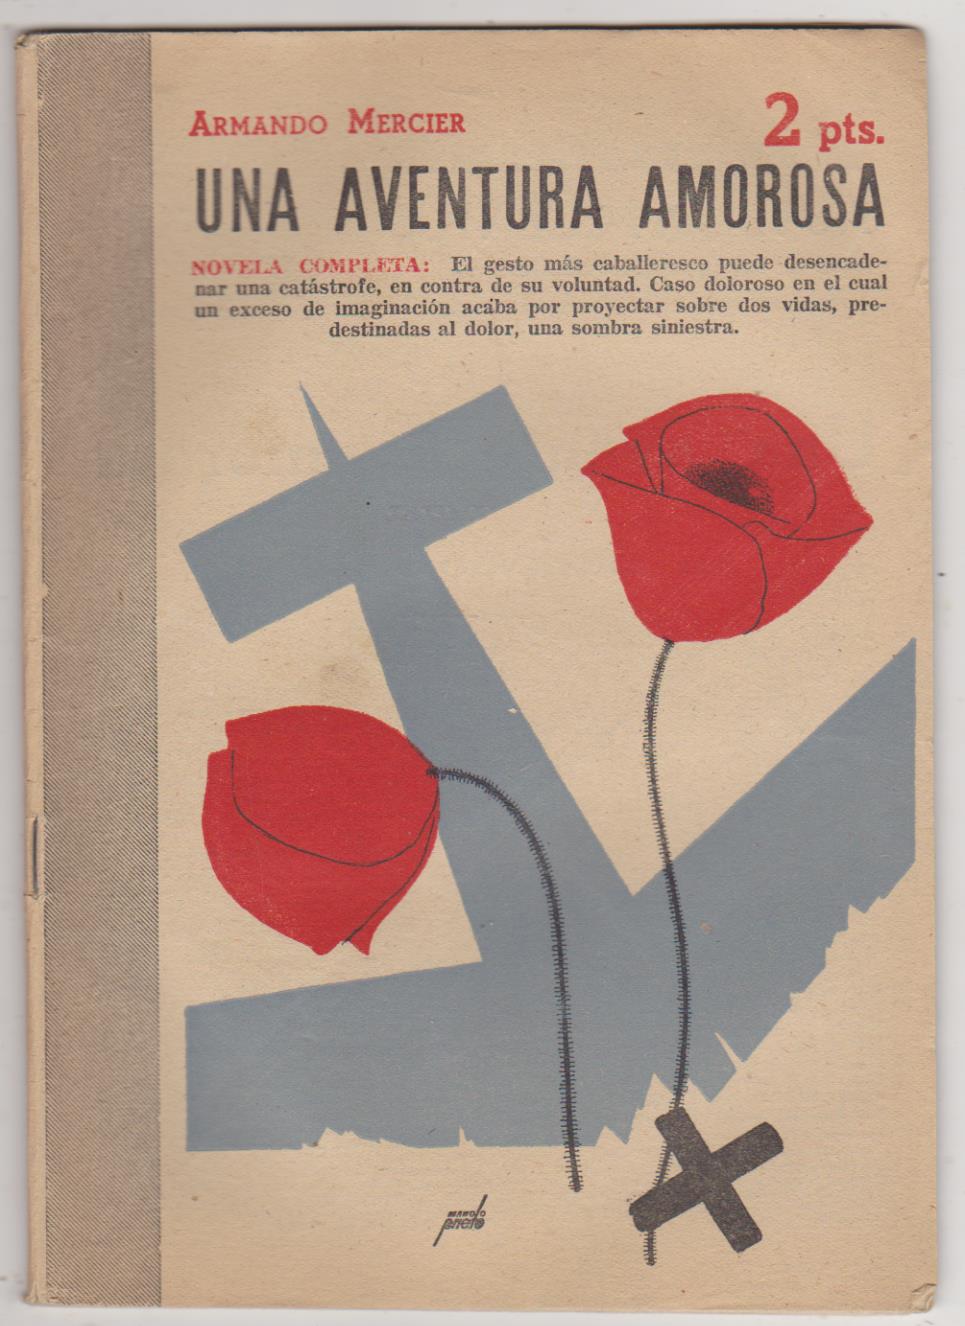 Revista Literaria nº 999. Armando Mercier. Una Aventura amorosa. Año 1950